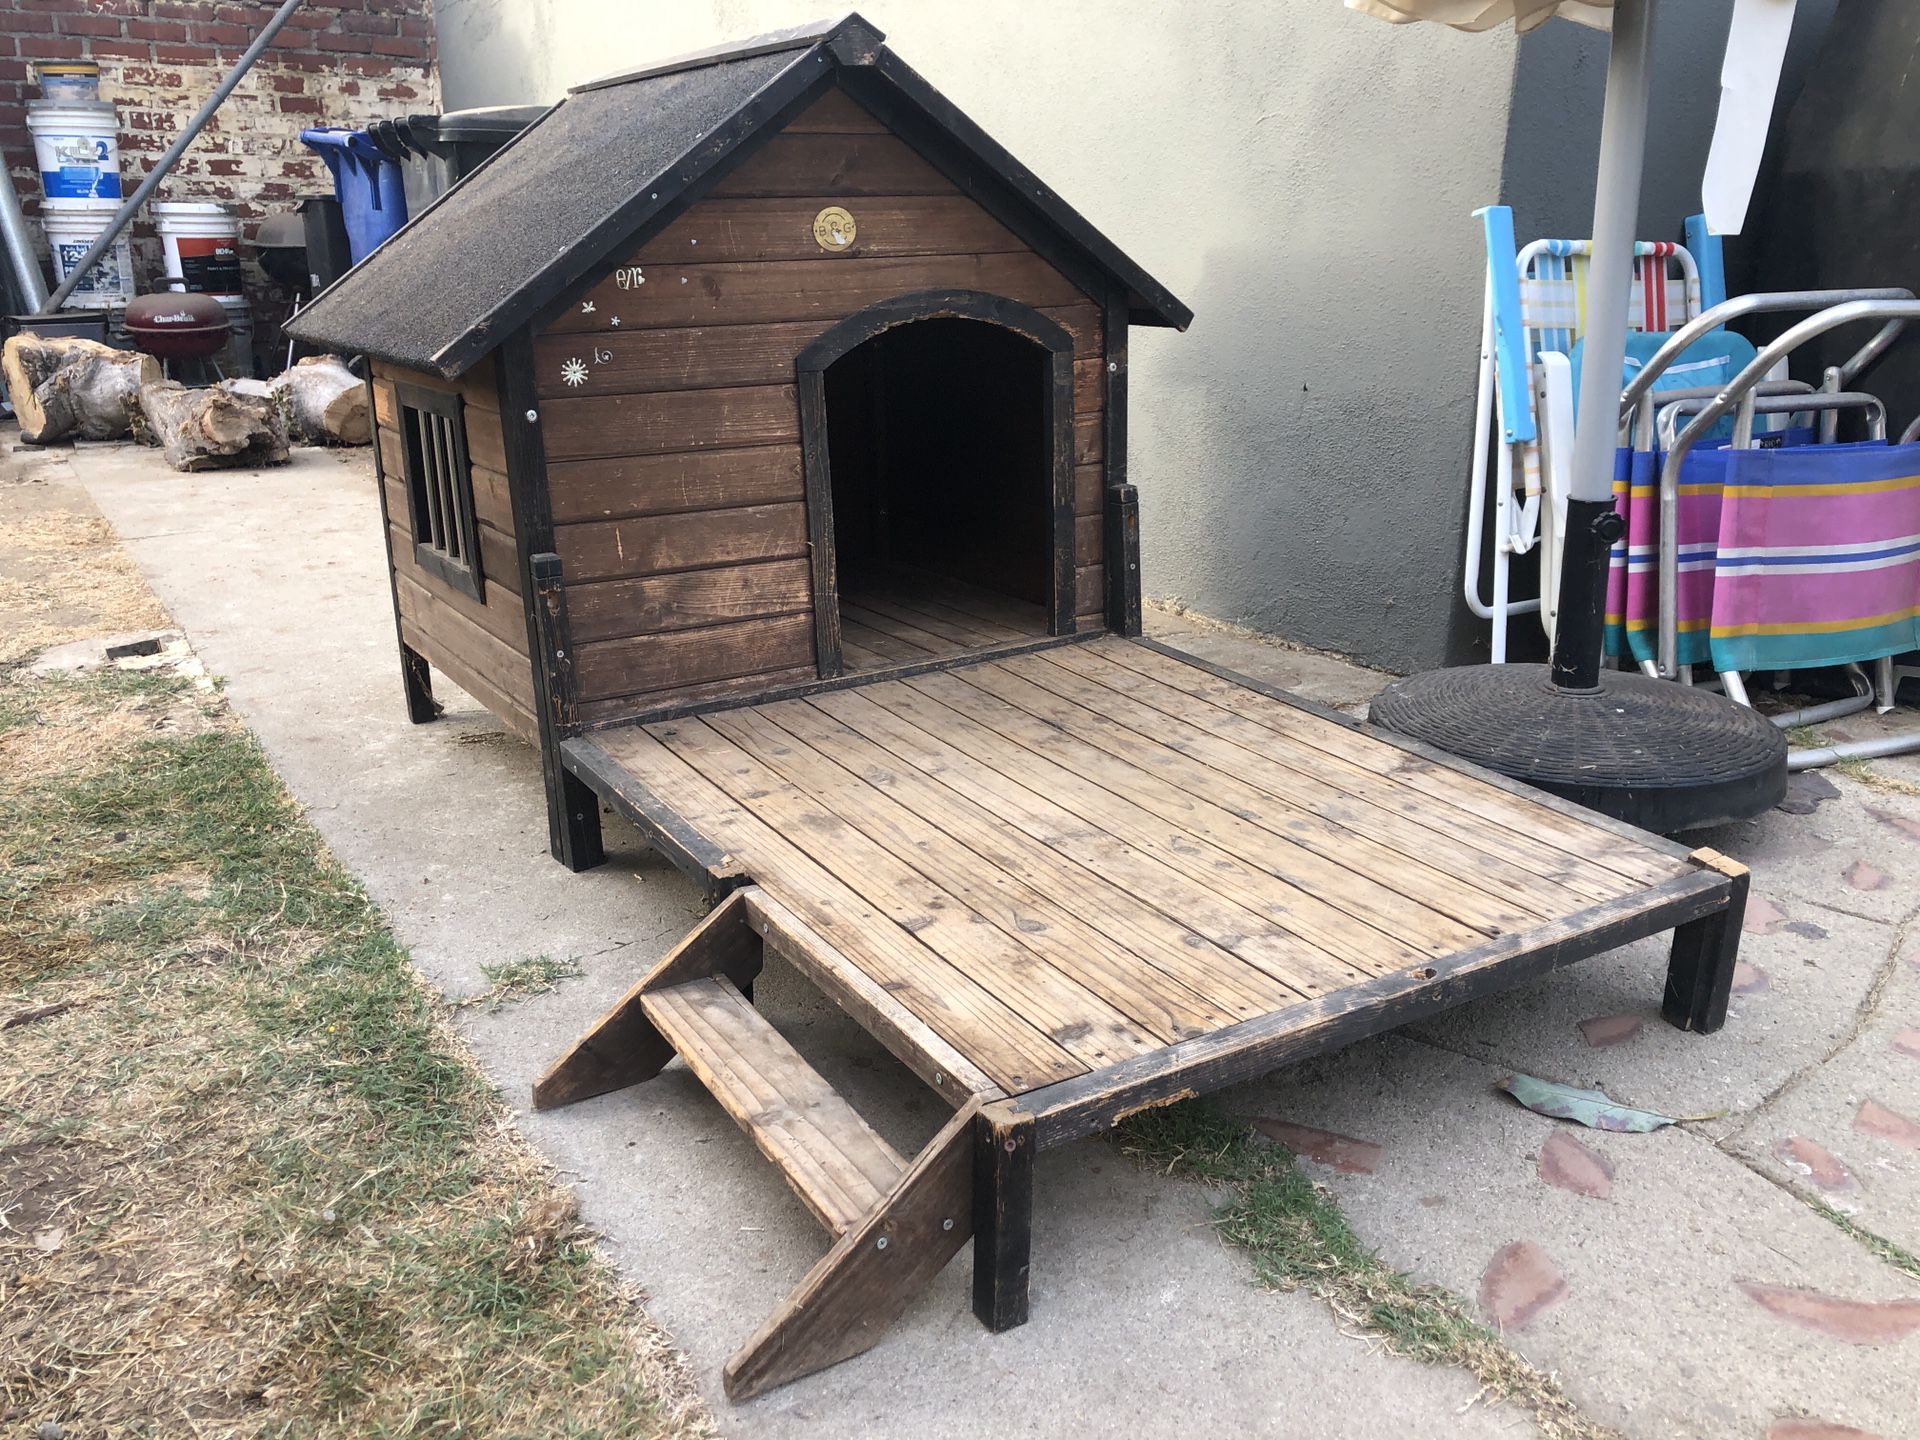 Used Dog House